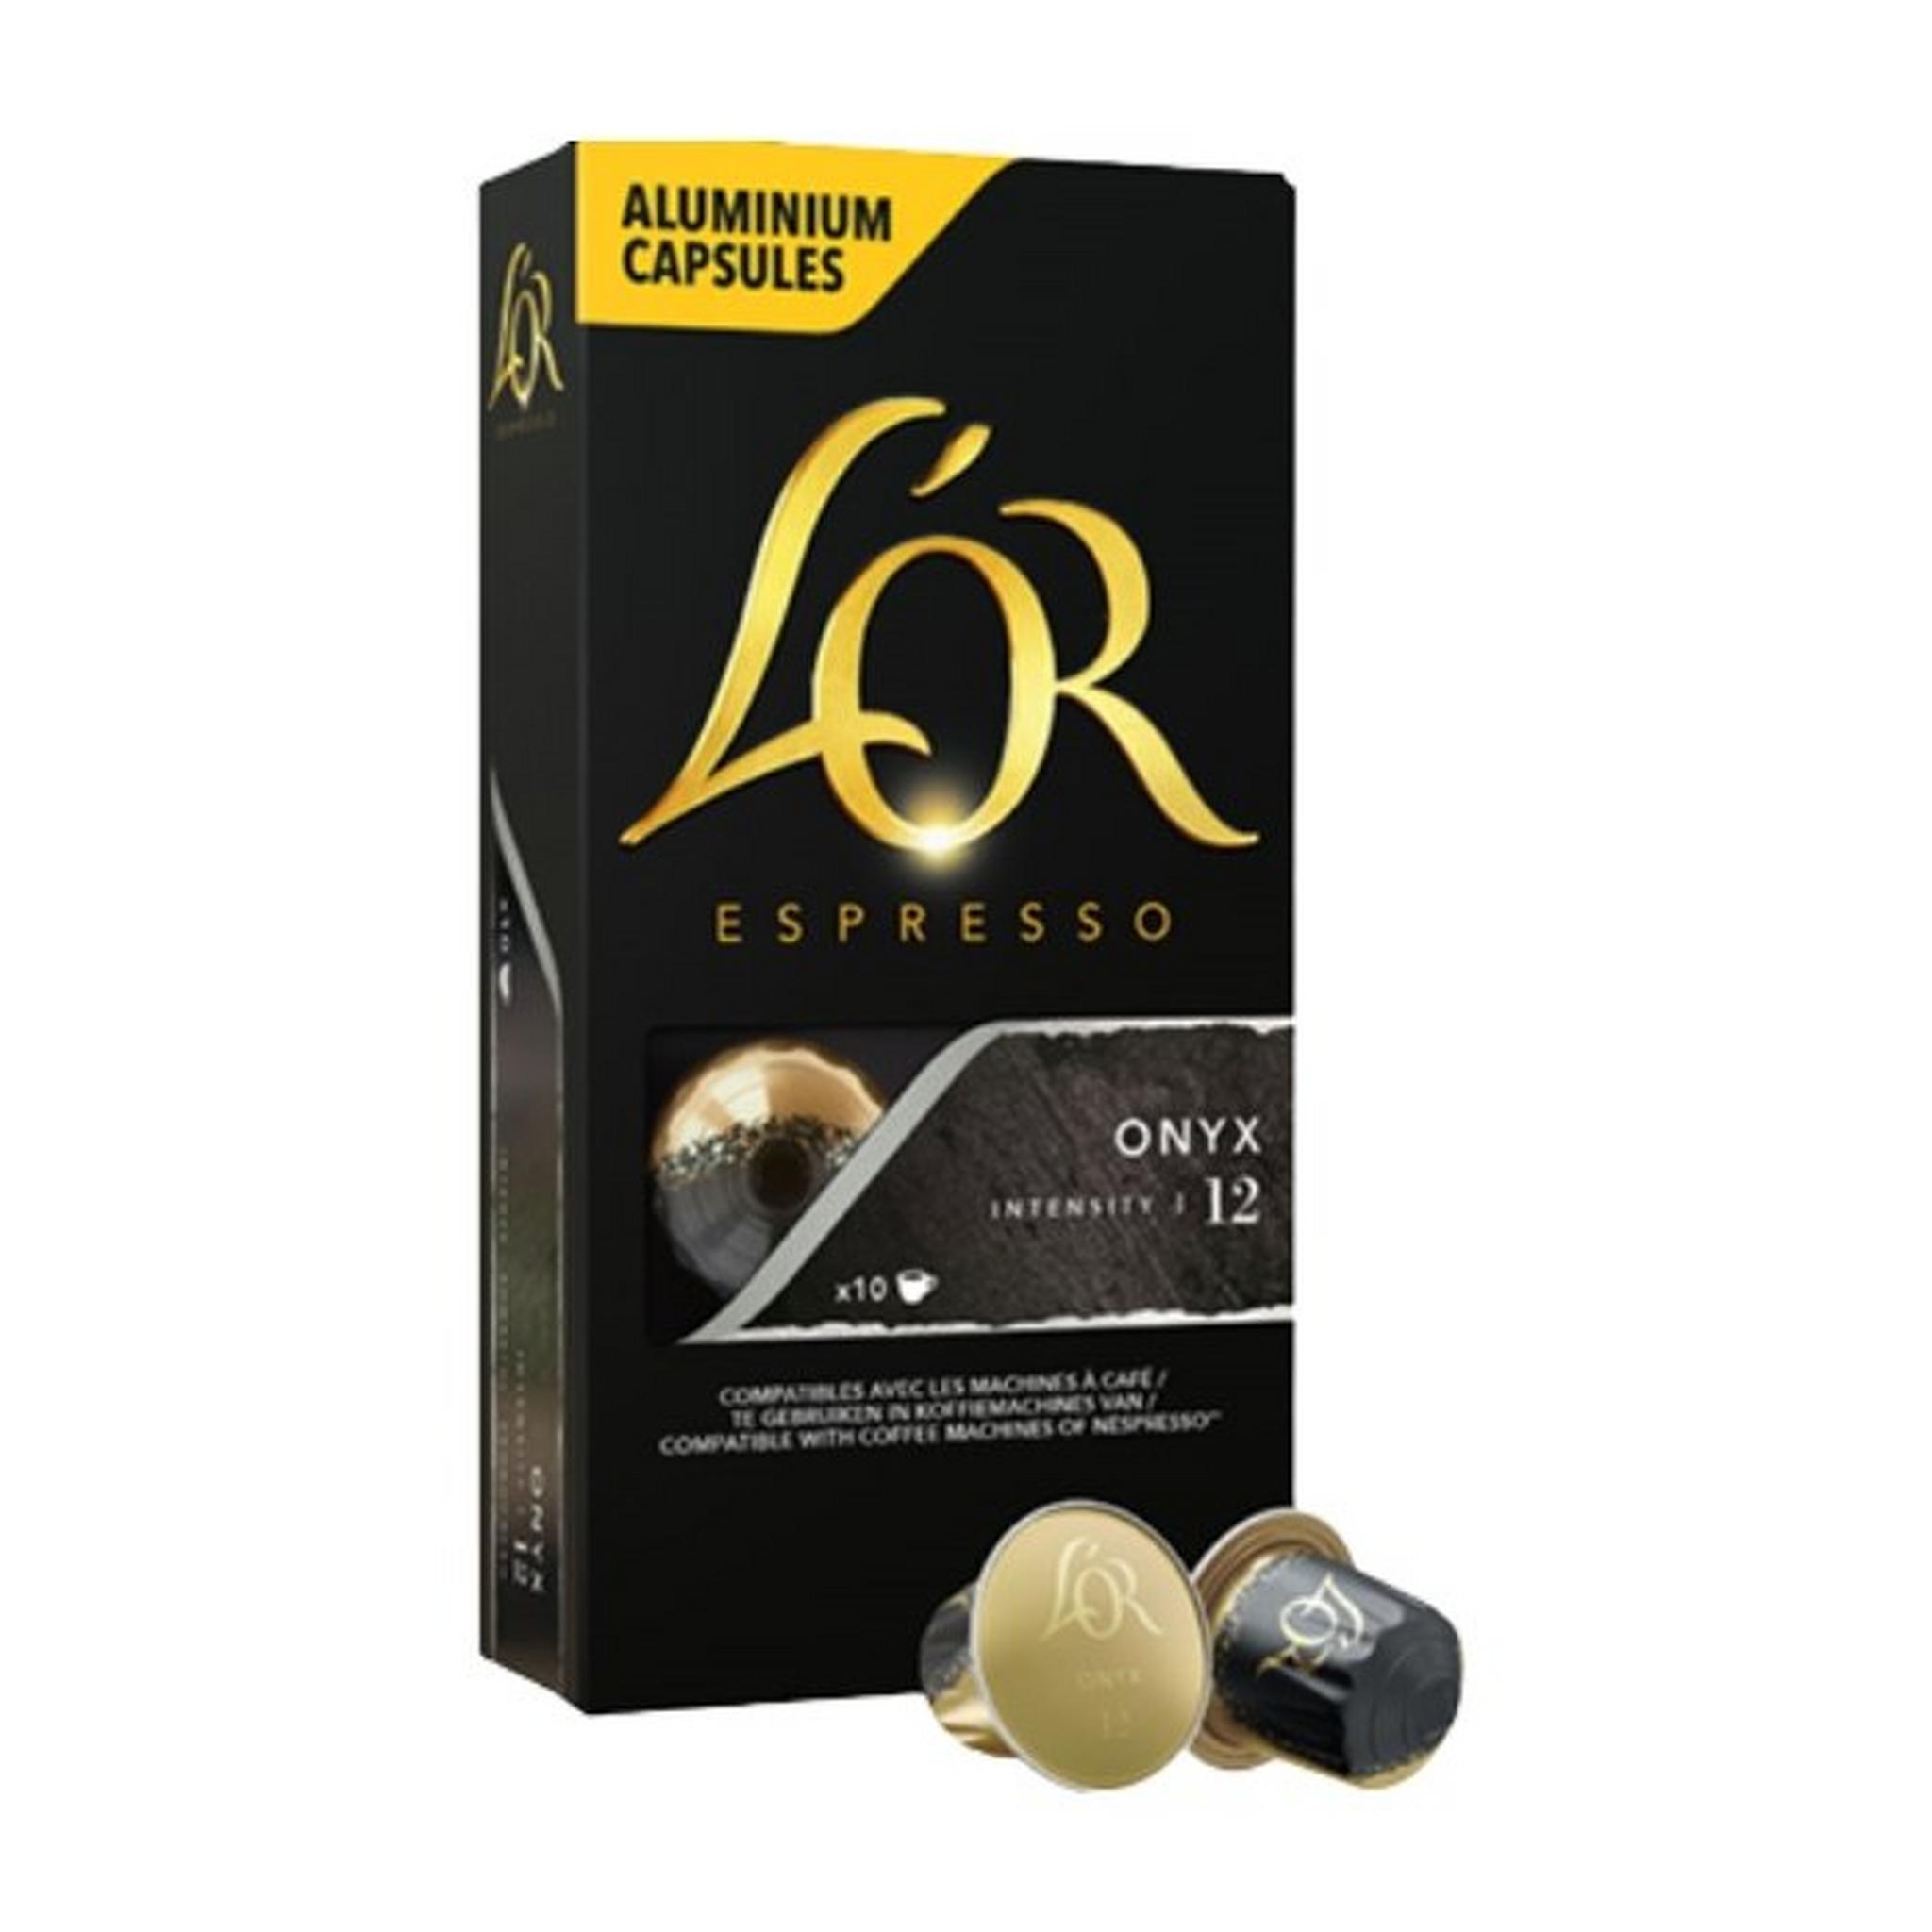 L'OR Espresso Onyx  Capsules